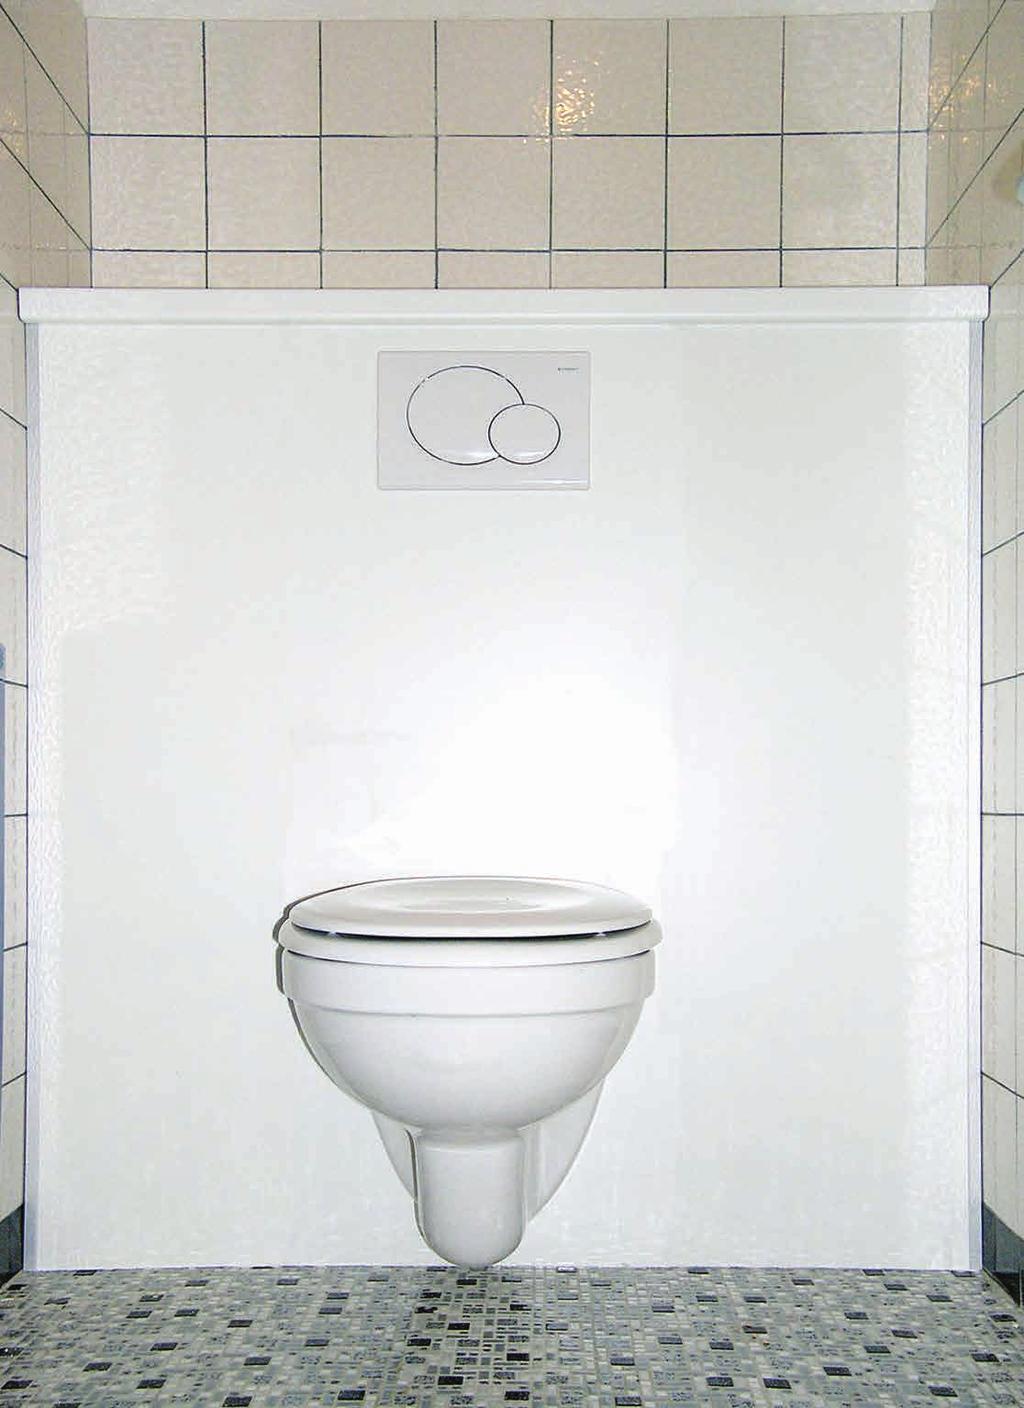 WC-Sanpaket mit Fertigoberfläche Anwendungstechnik Beispiel Materialauszug Kein Spachteln, Malen oder Verfliesen Die Verkleidung ist mit einer hygienischen, leicht reinigbaren Beschichtung versehen.